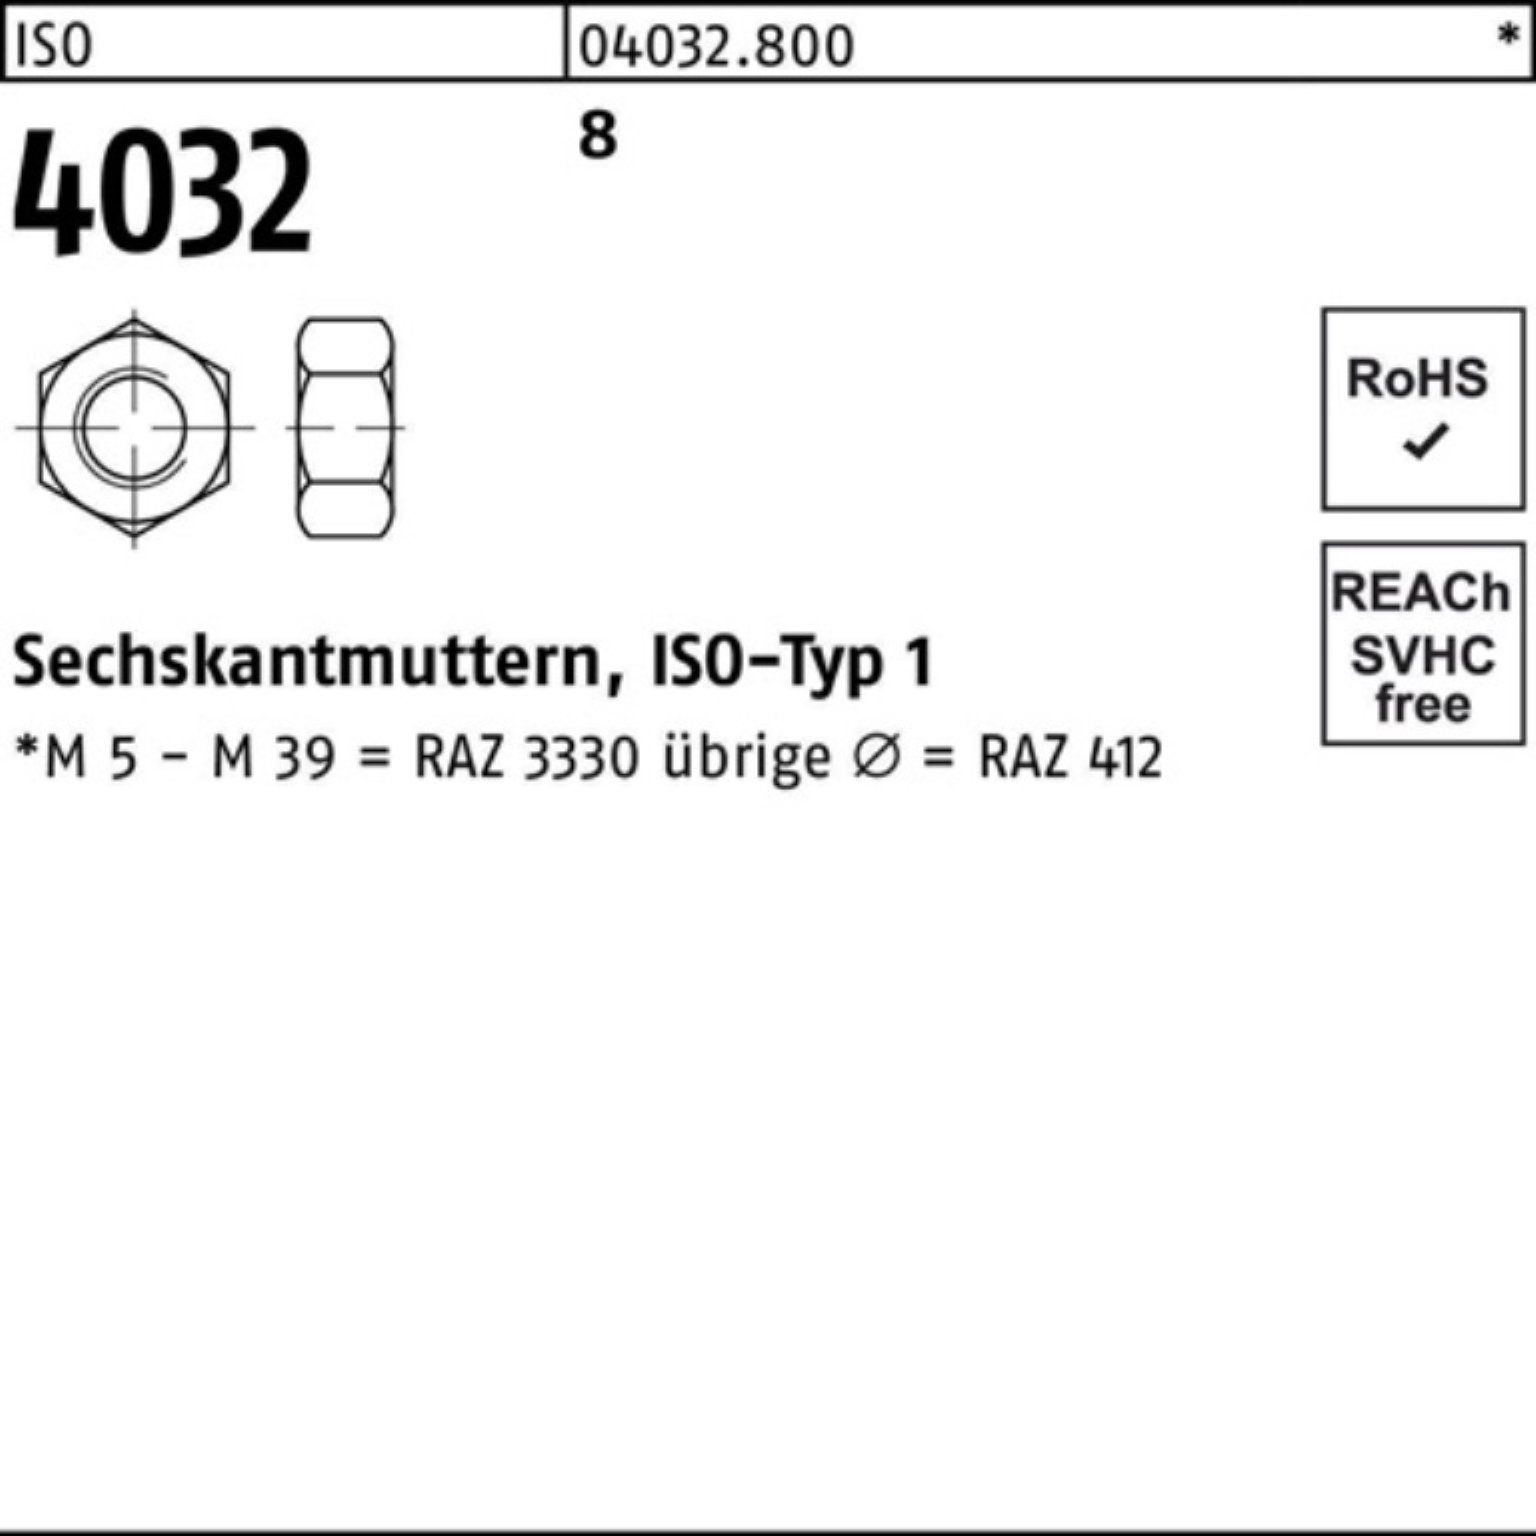 Bufab Muttern 100er 8 1 Sechskan ISO M56 Sechskantmutter Pack 4032 Stück 8 ISO 4032